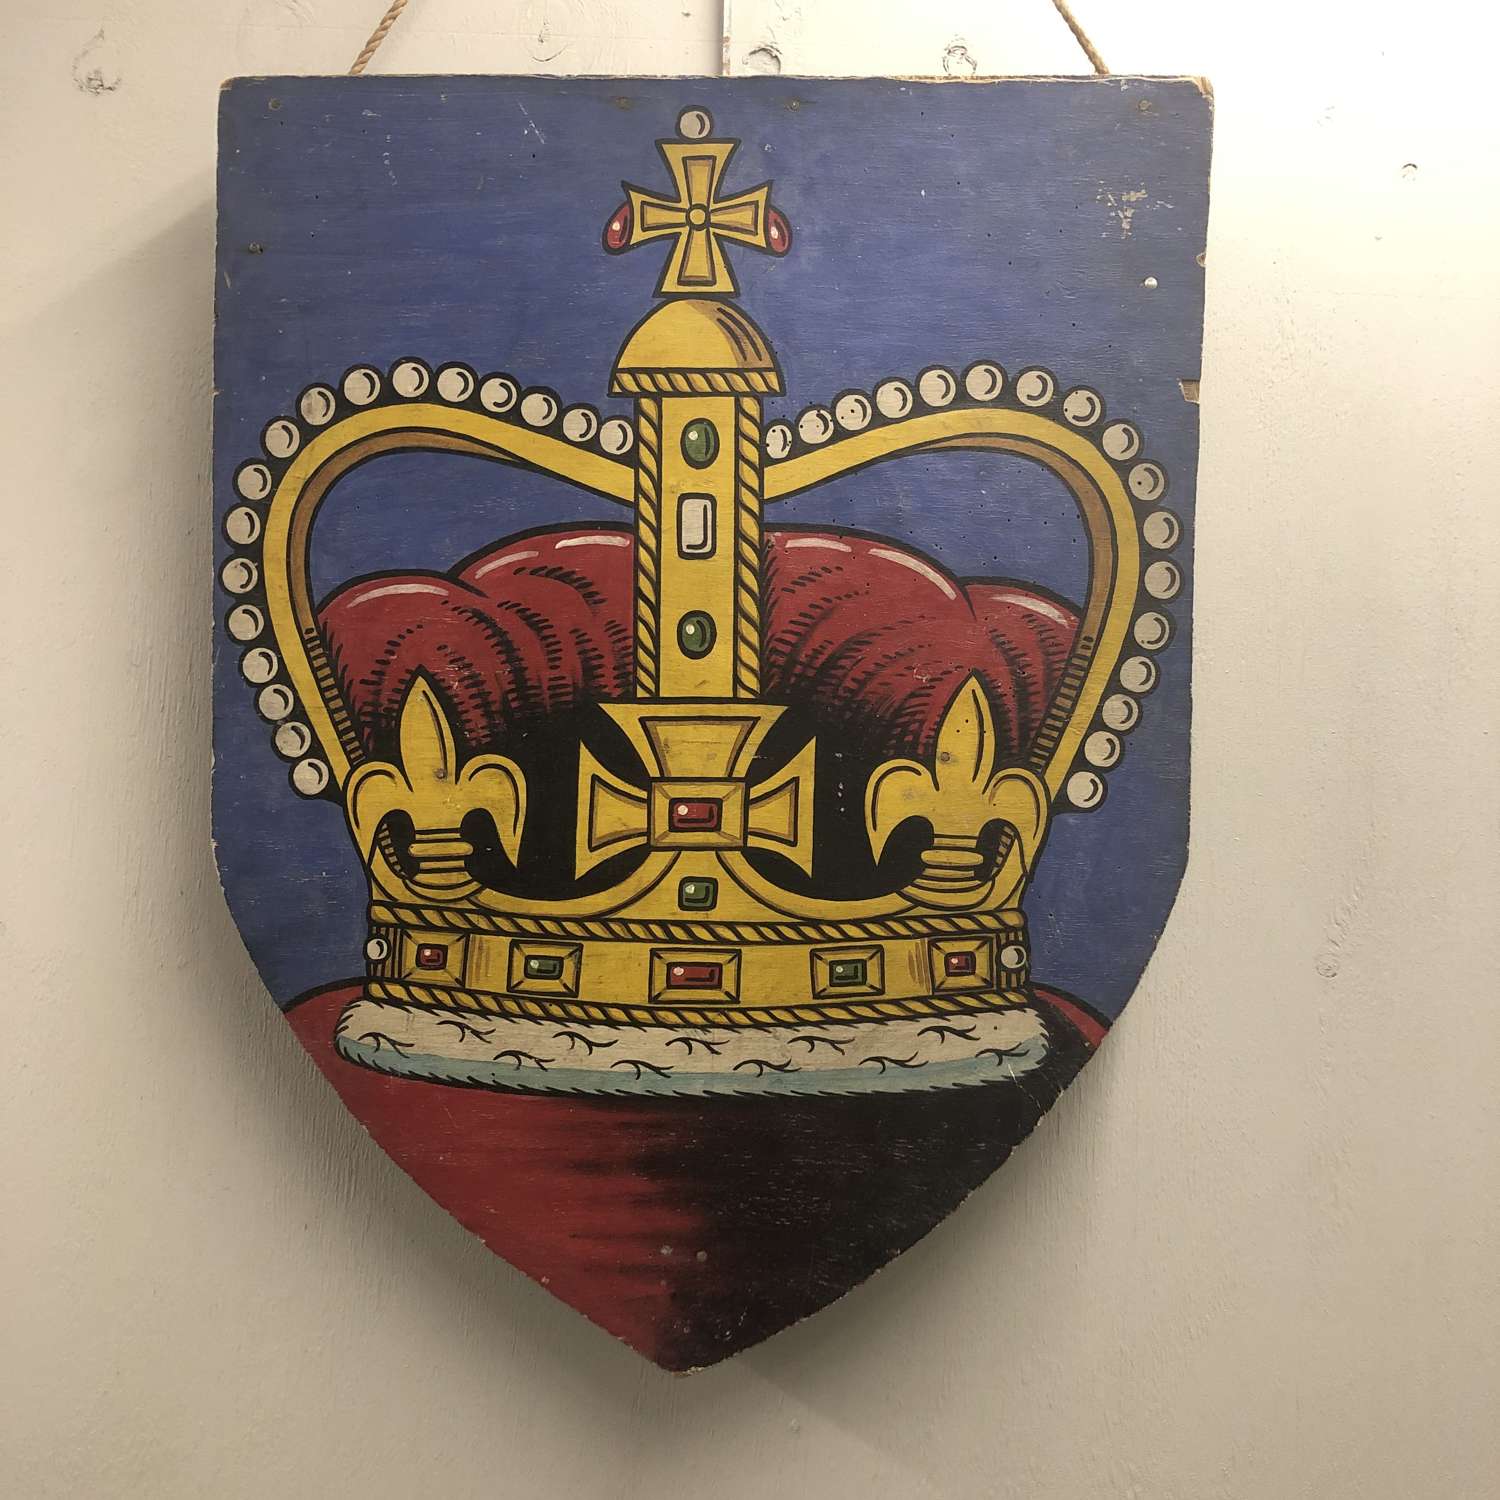 Coronation decorative shield